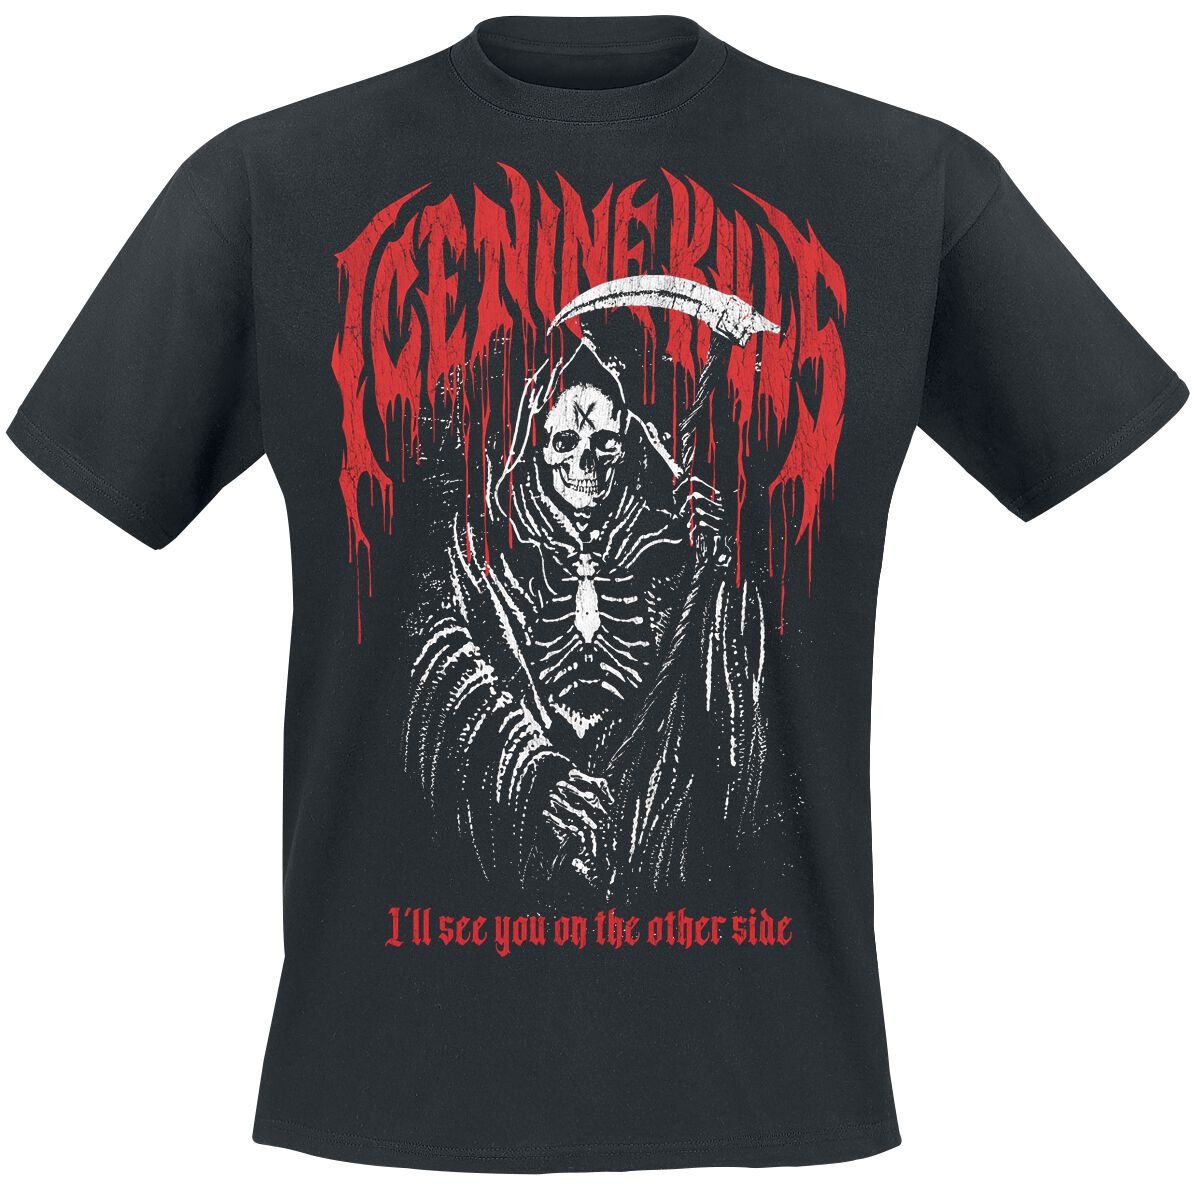 Ice Nine Kills T-Shirt - Other Side - S bis 3XL - für Männer - Größe L - schwarz  - Lizenziertes Merchandise!